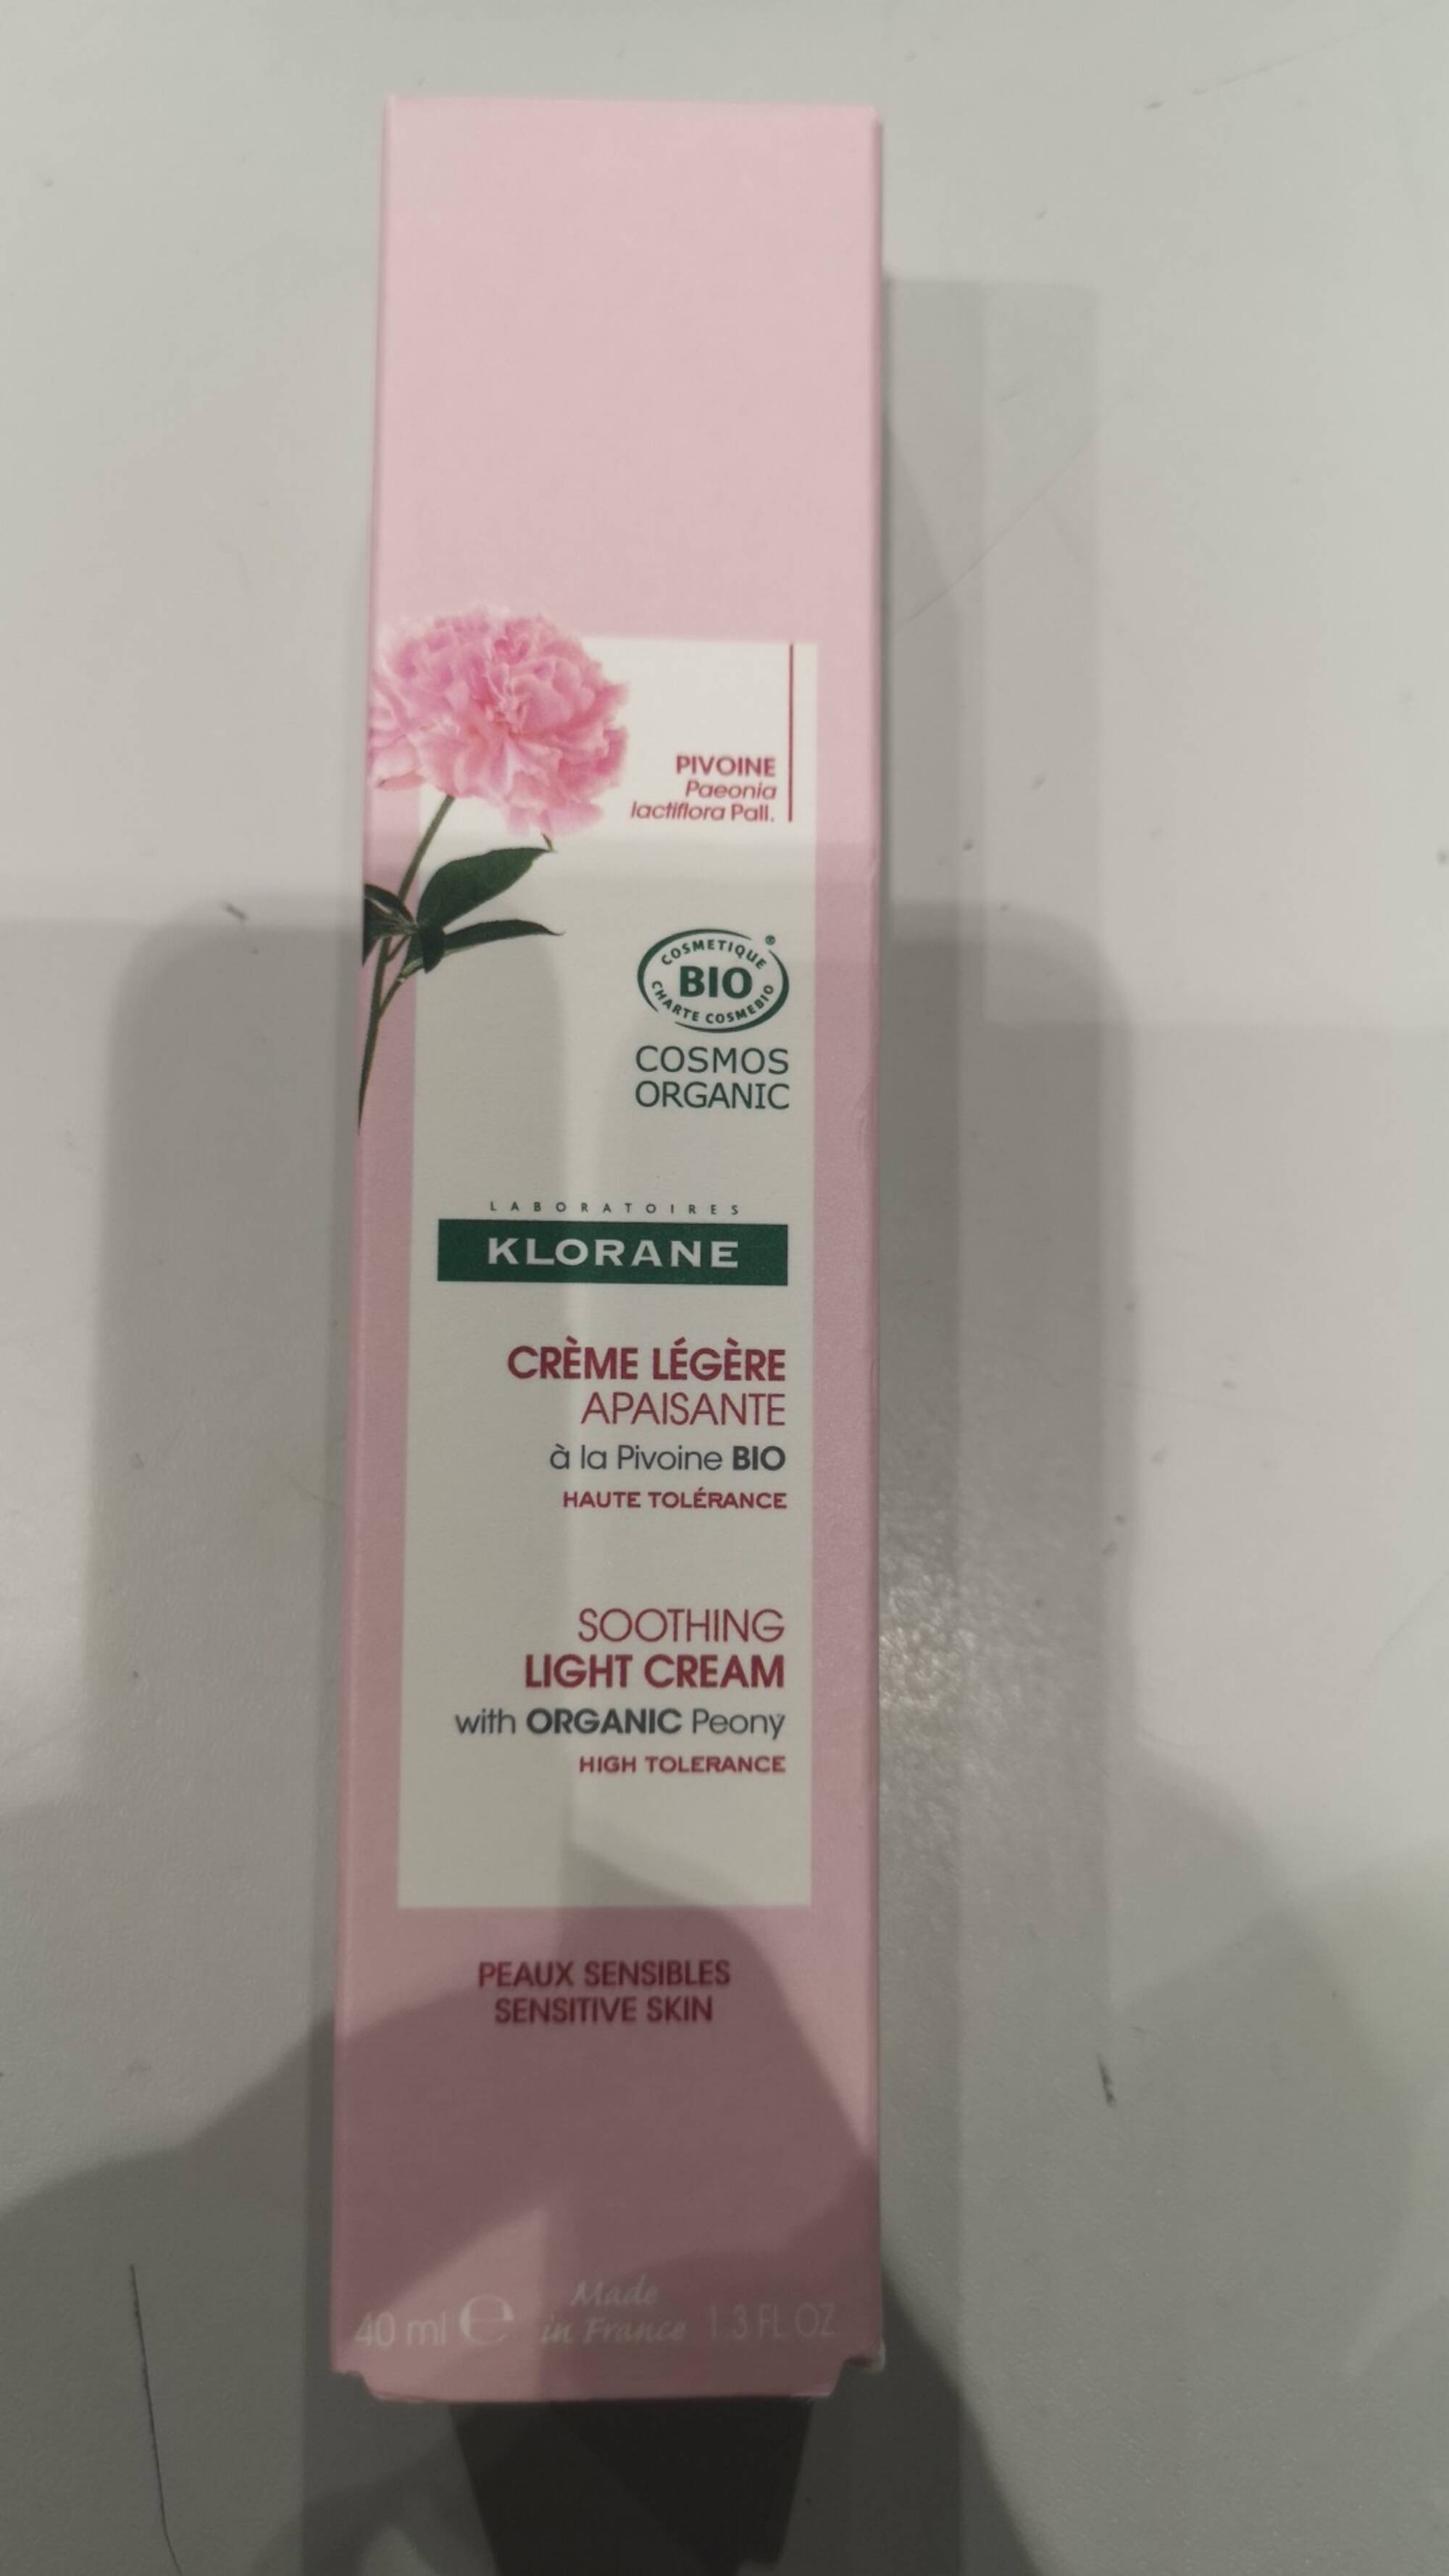 KLORANE - Peaux sensibles - Crème légère apaisante 